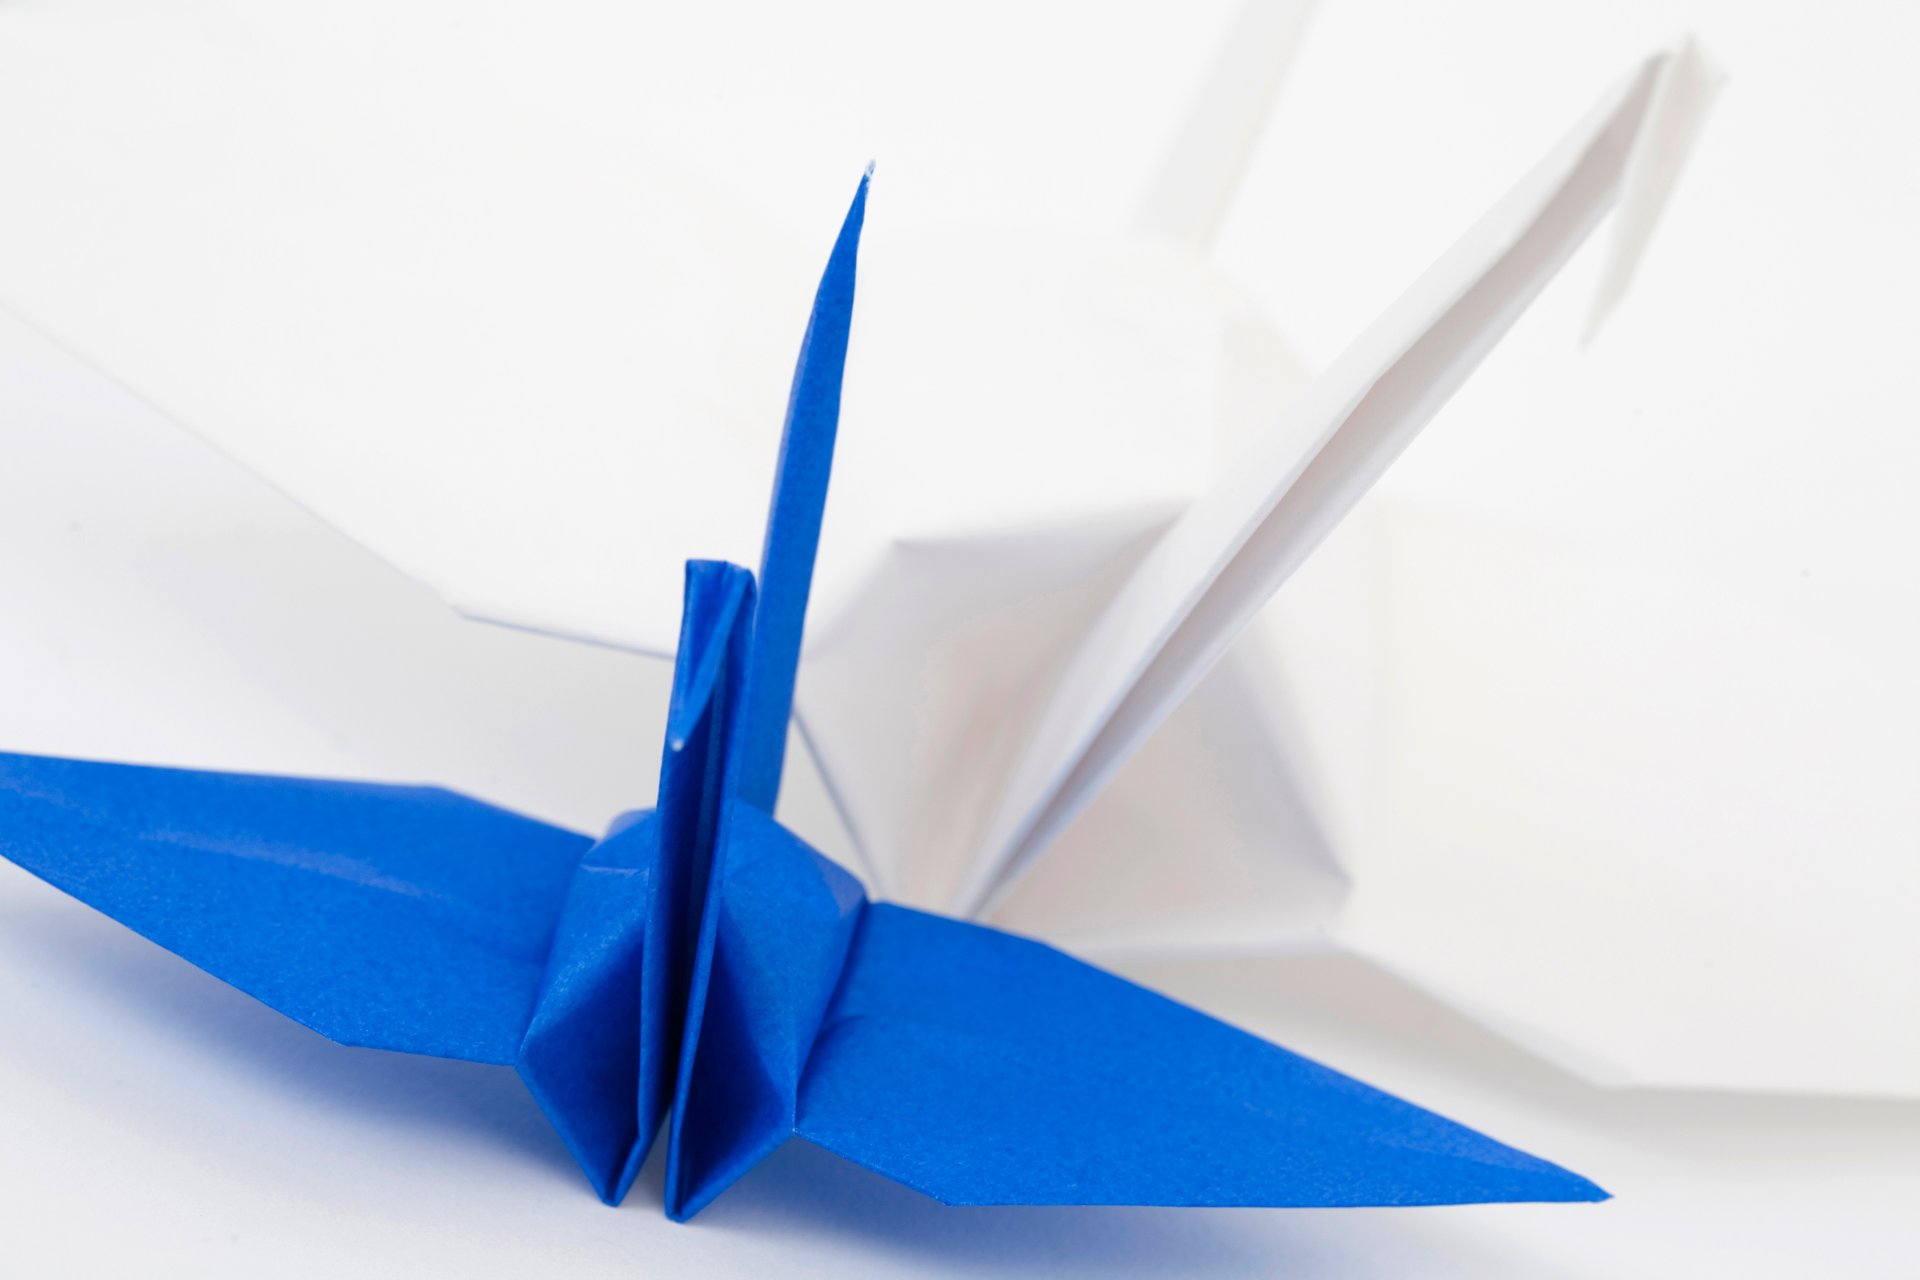 Мастер-класс Материалы и инструменты Оригами китайское модульное Треугольный модуль оригами Бумага